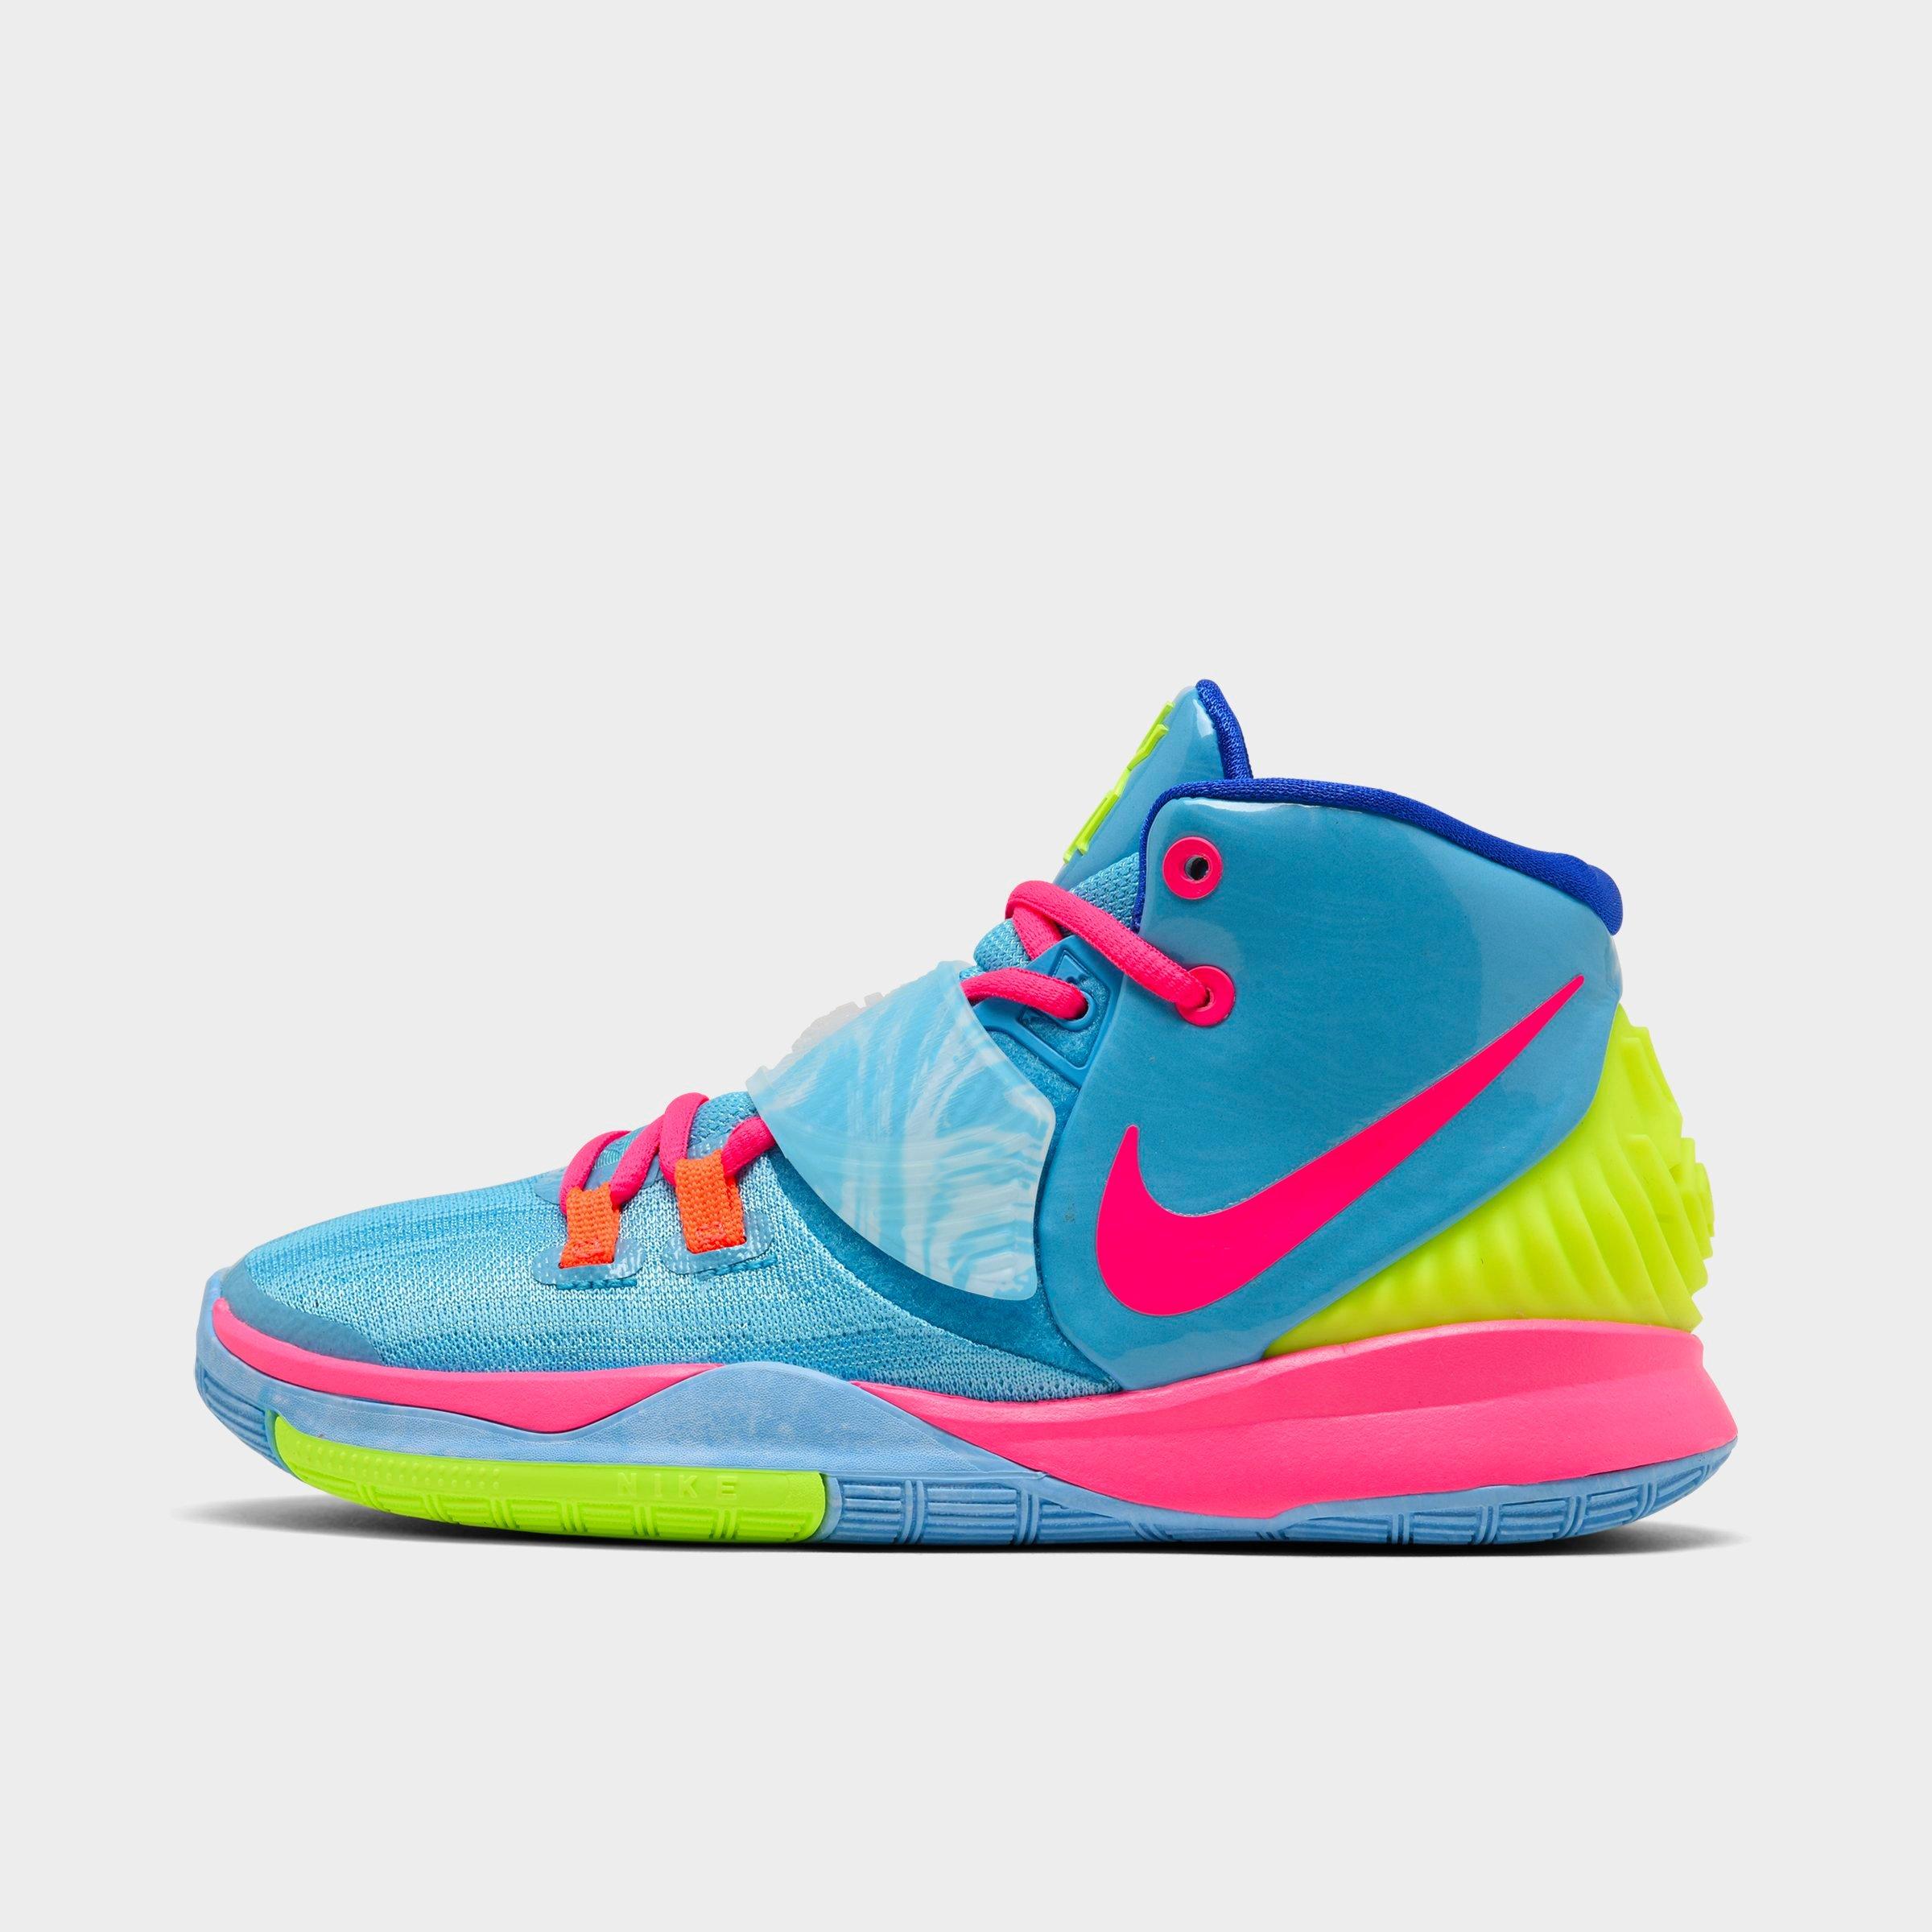 kyrie 6 basketball shoe